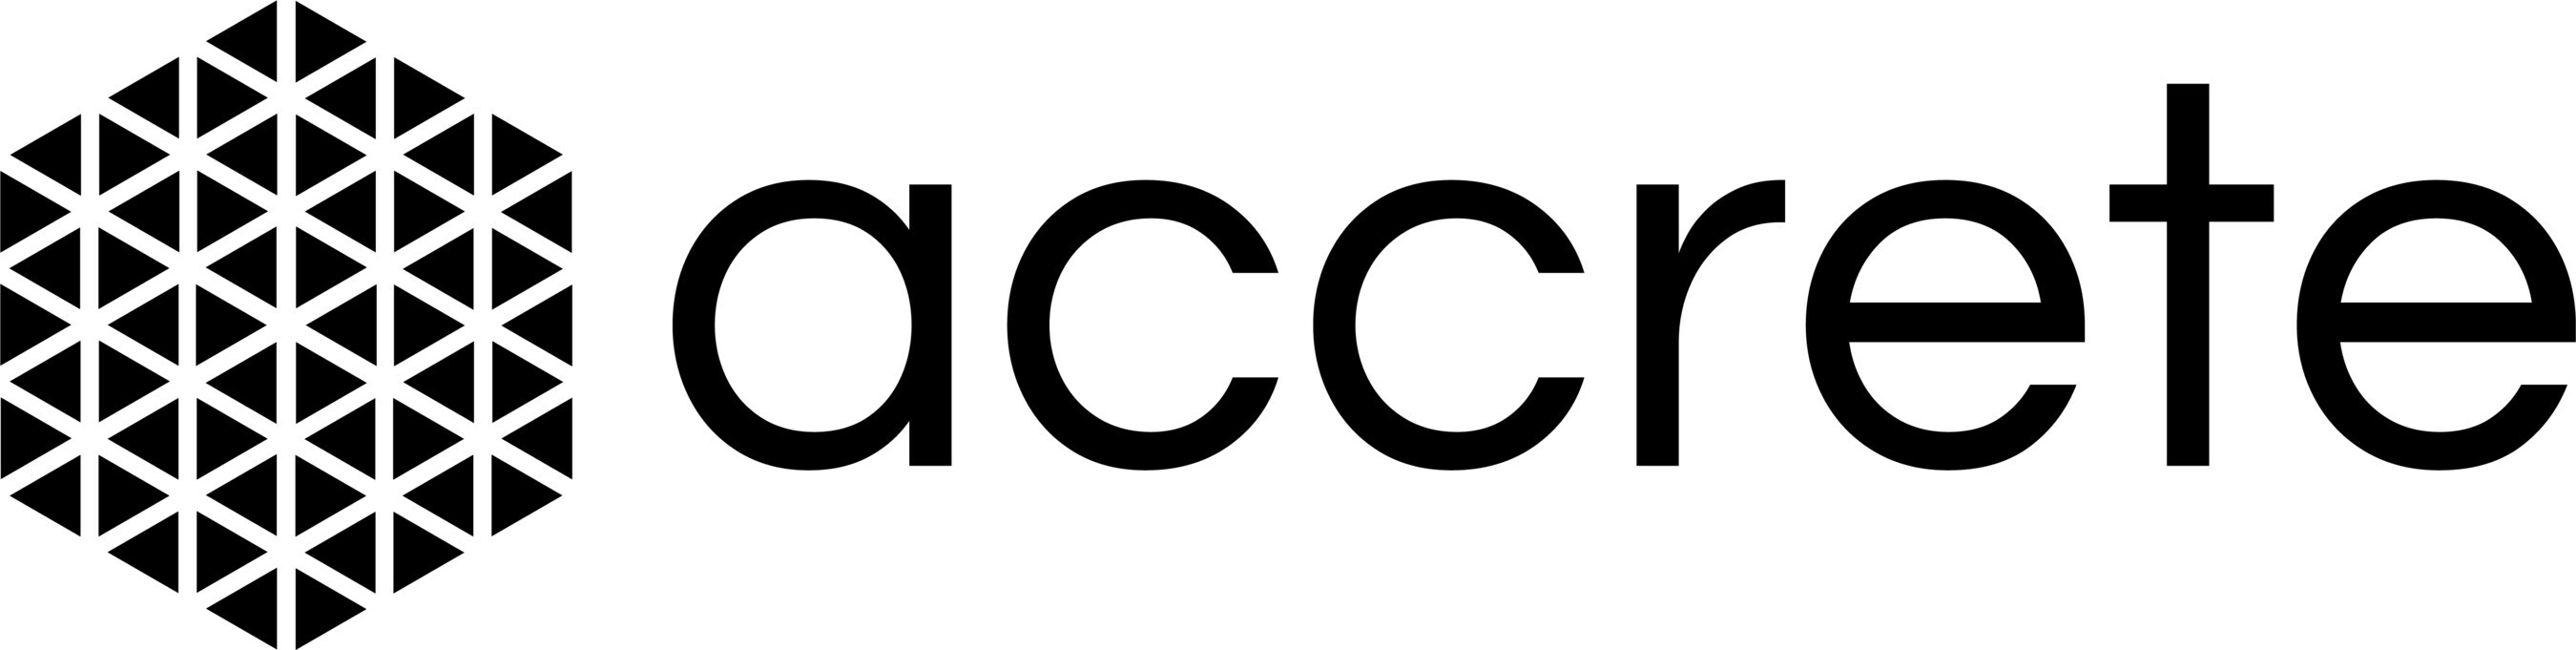 Accrete Logo (PRNewsfoto/Accrete)